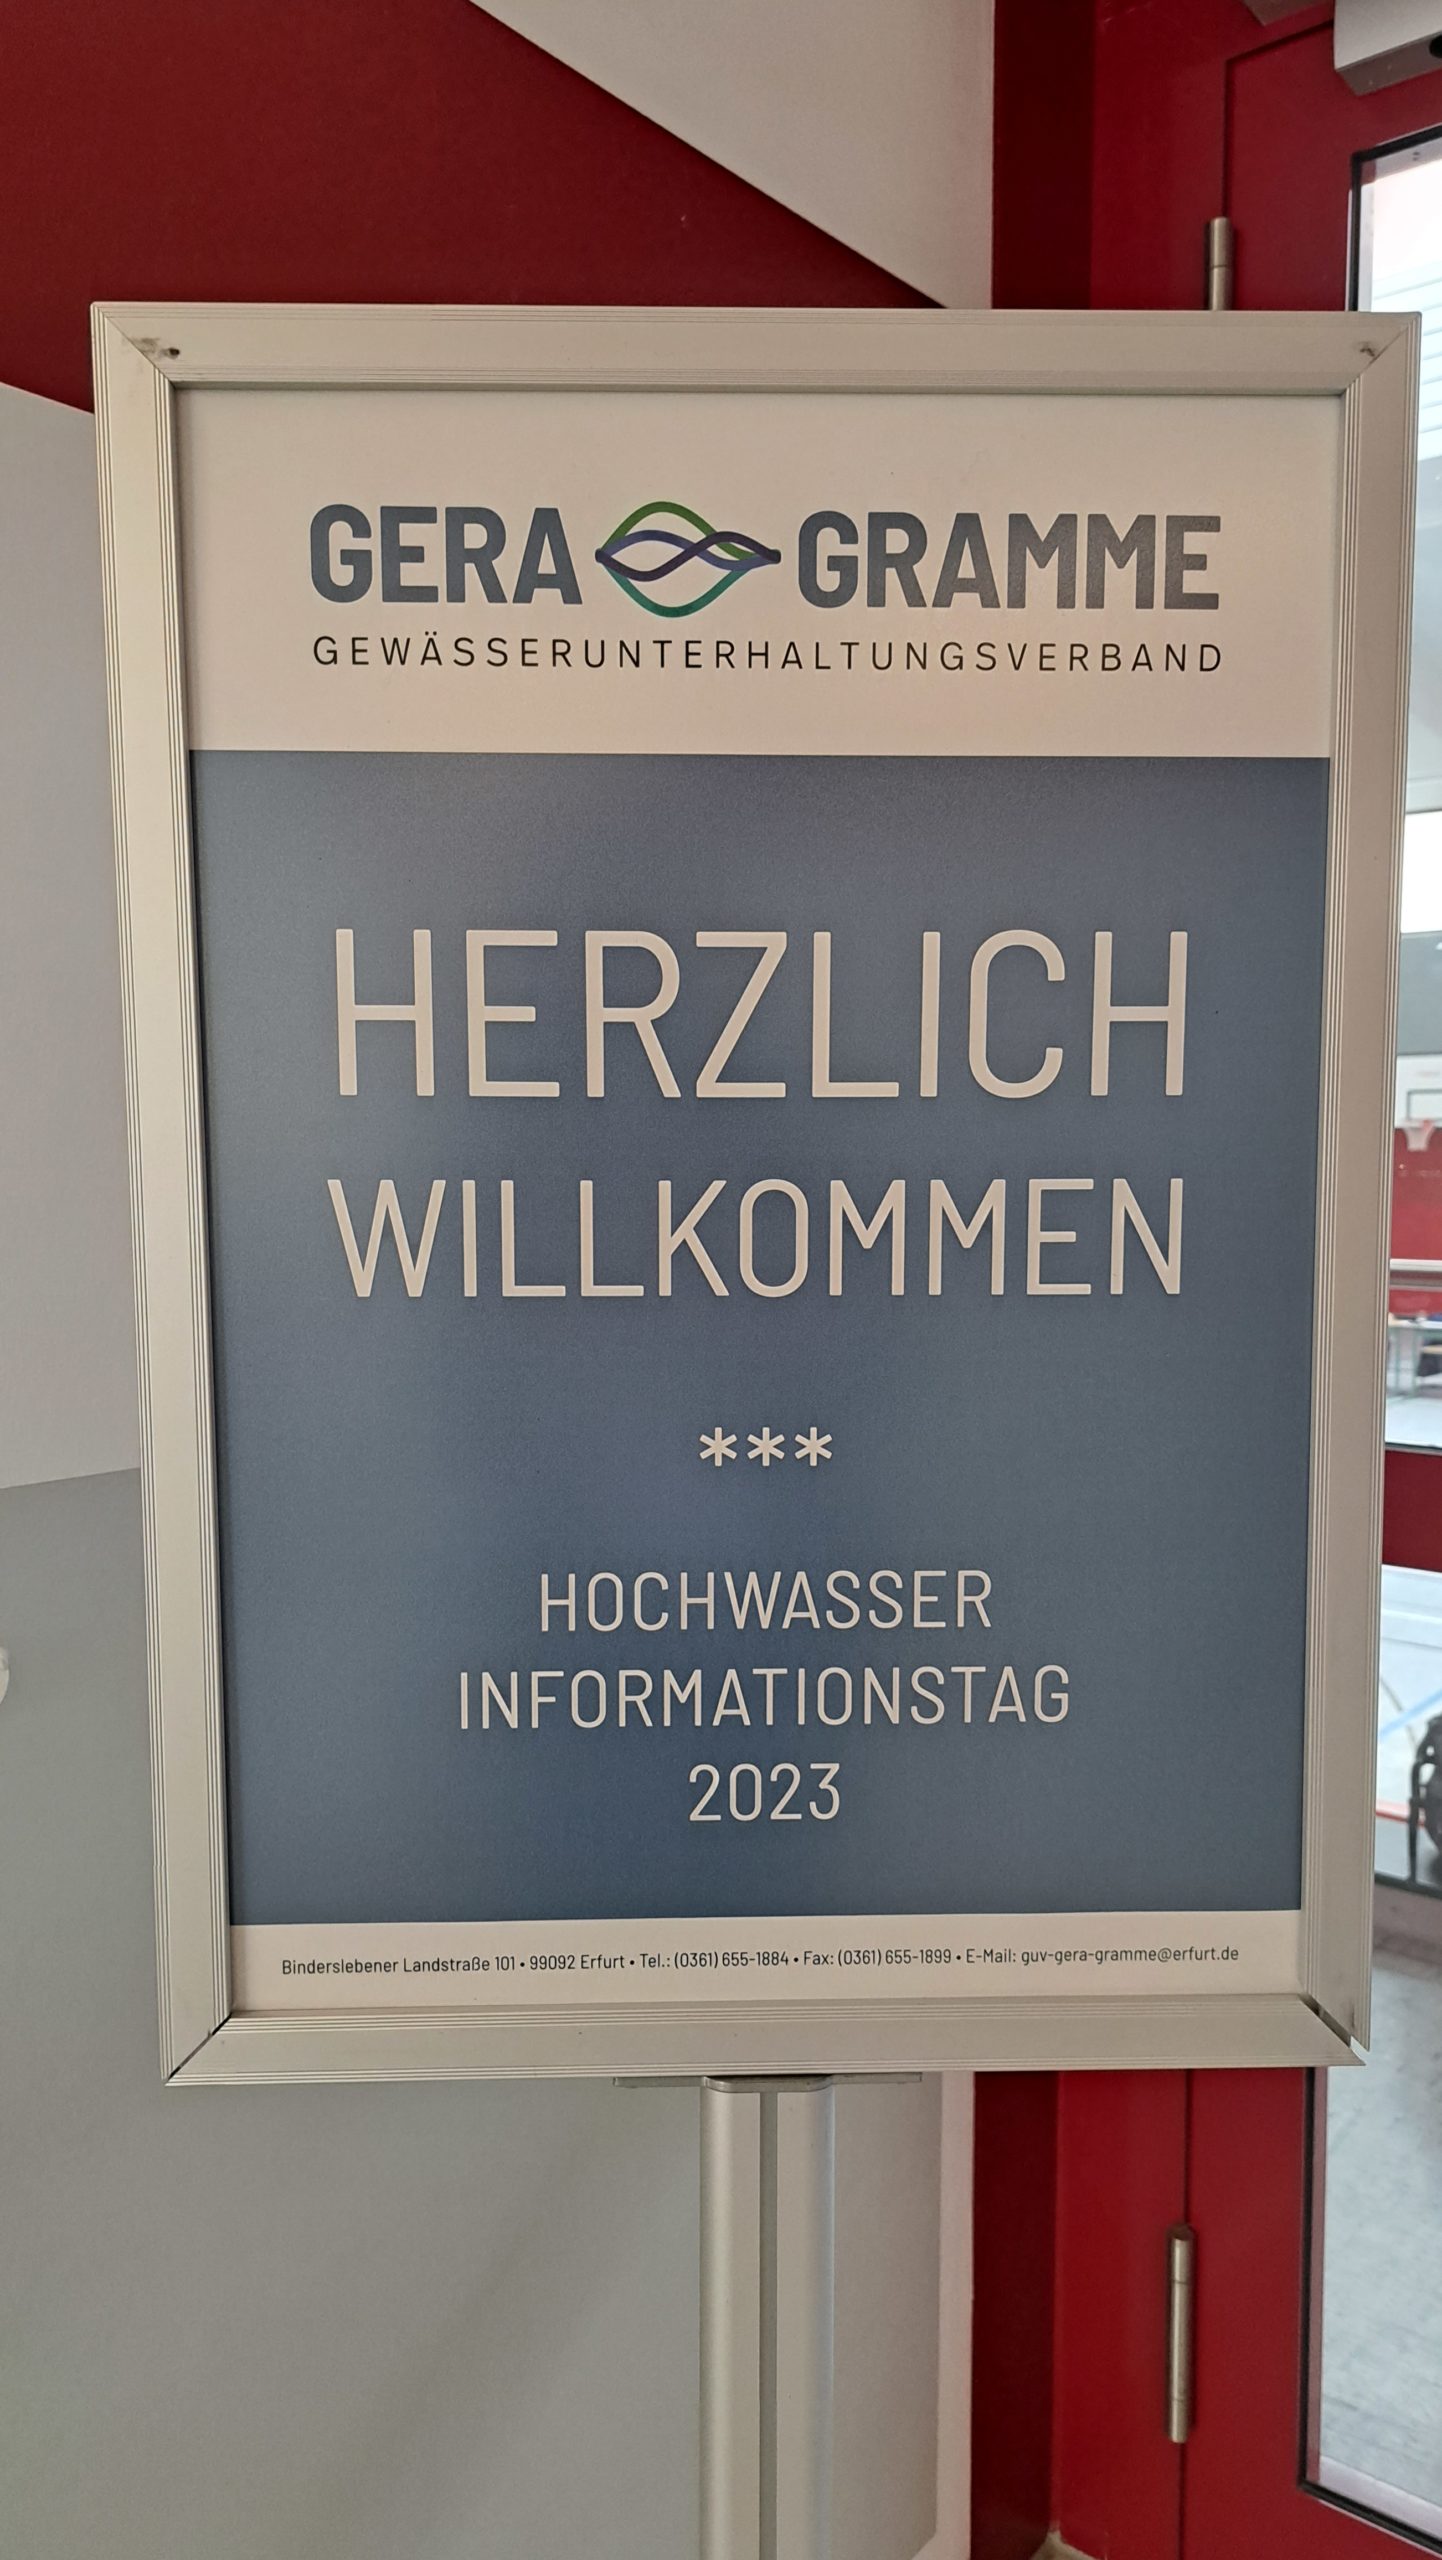 Read more about the article Hochwasserinformationstag beim Gewässerunterhaltungsverband Gera/Gramme